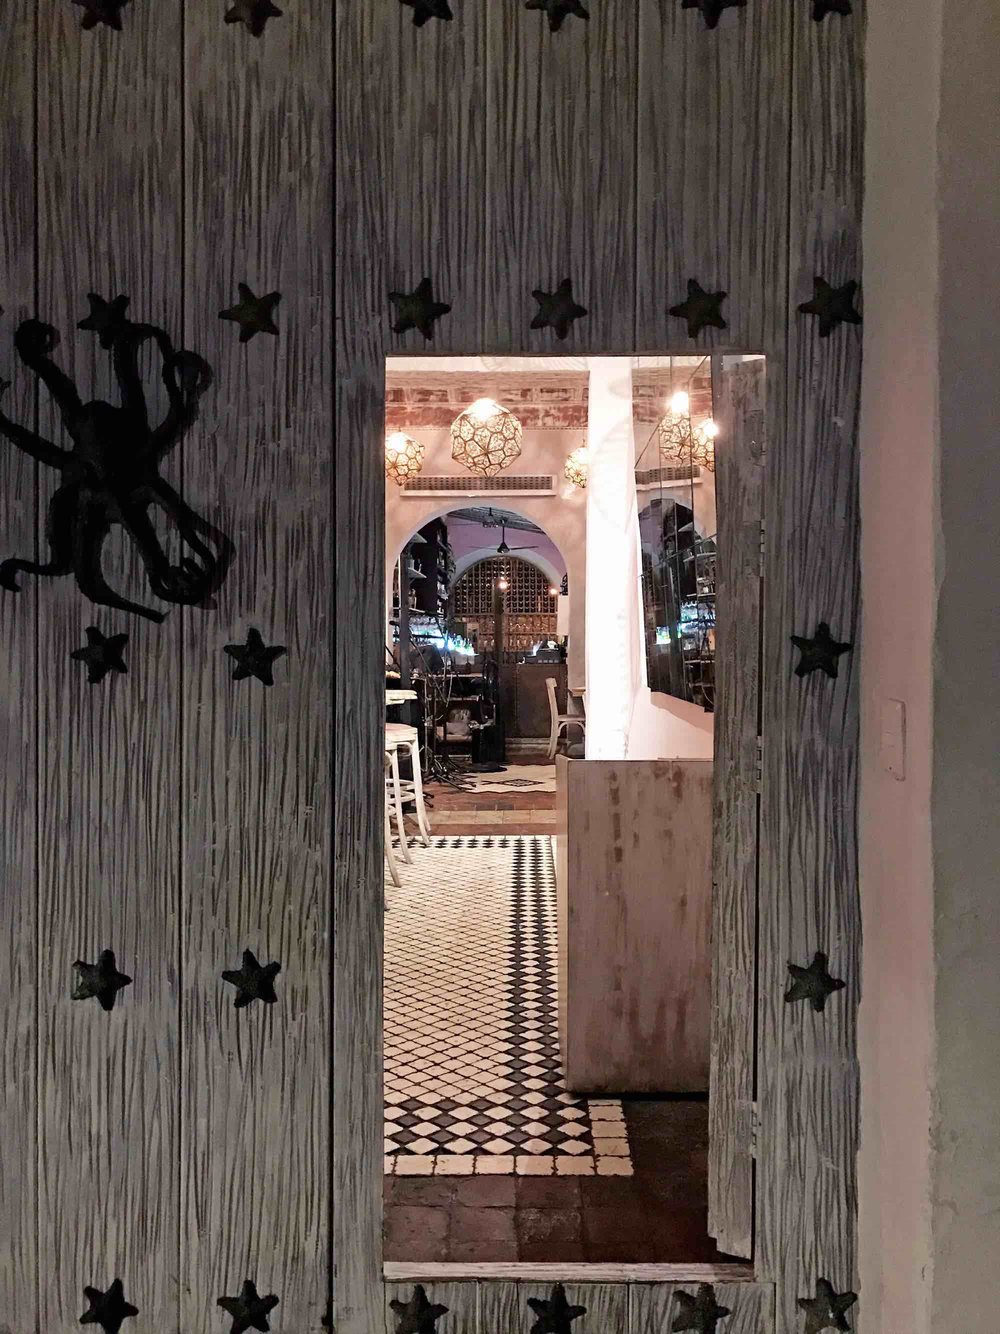 Octopus door knocker | Doors and Door Knockers of Cartagena, Colombia | pictures of Cartagena, Colombia